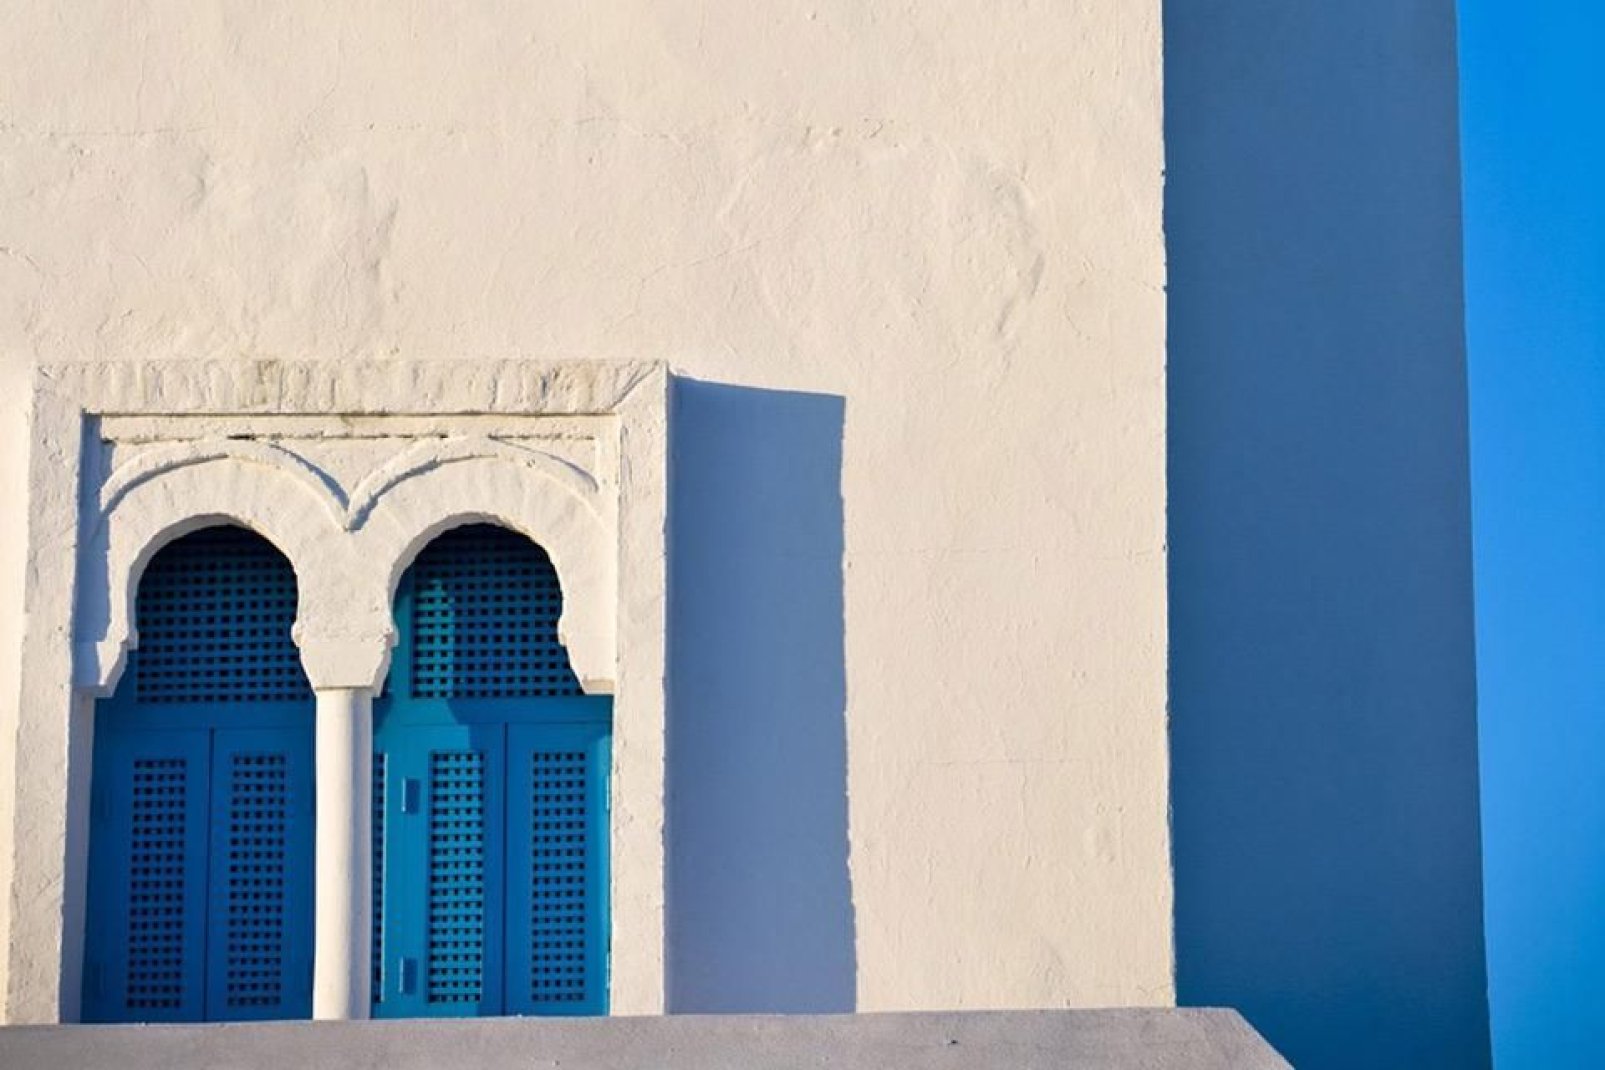 Le charme et l'authenticité de Kairouan s'expose dans l'architecture de ses maisons traditionnelles.